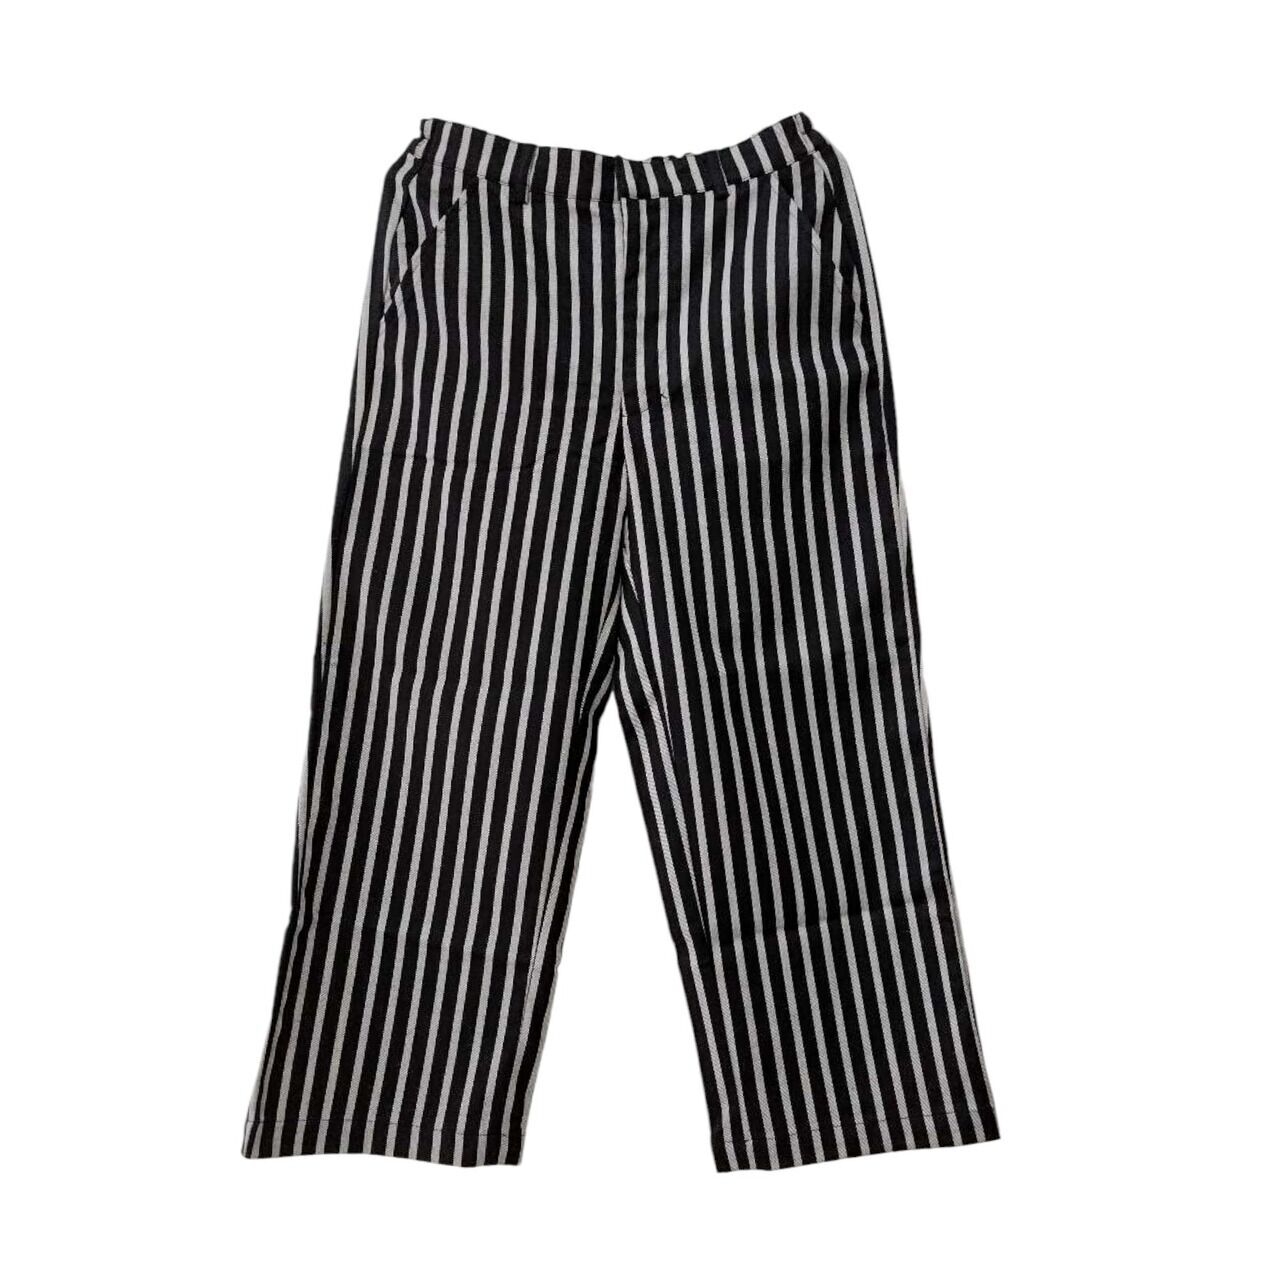 Argyle Oxford Black & White Stripes Long Pants